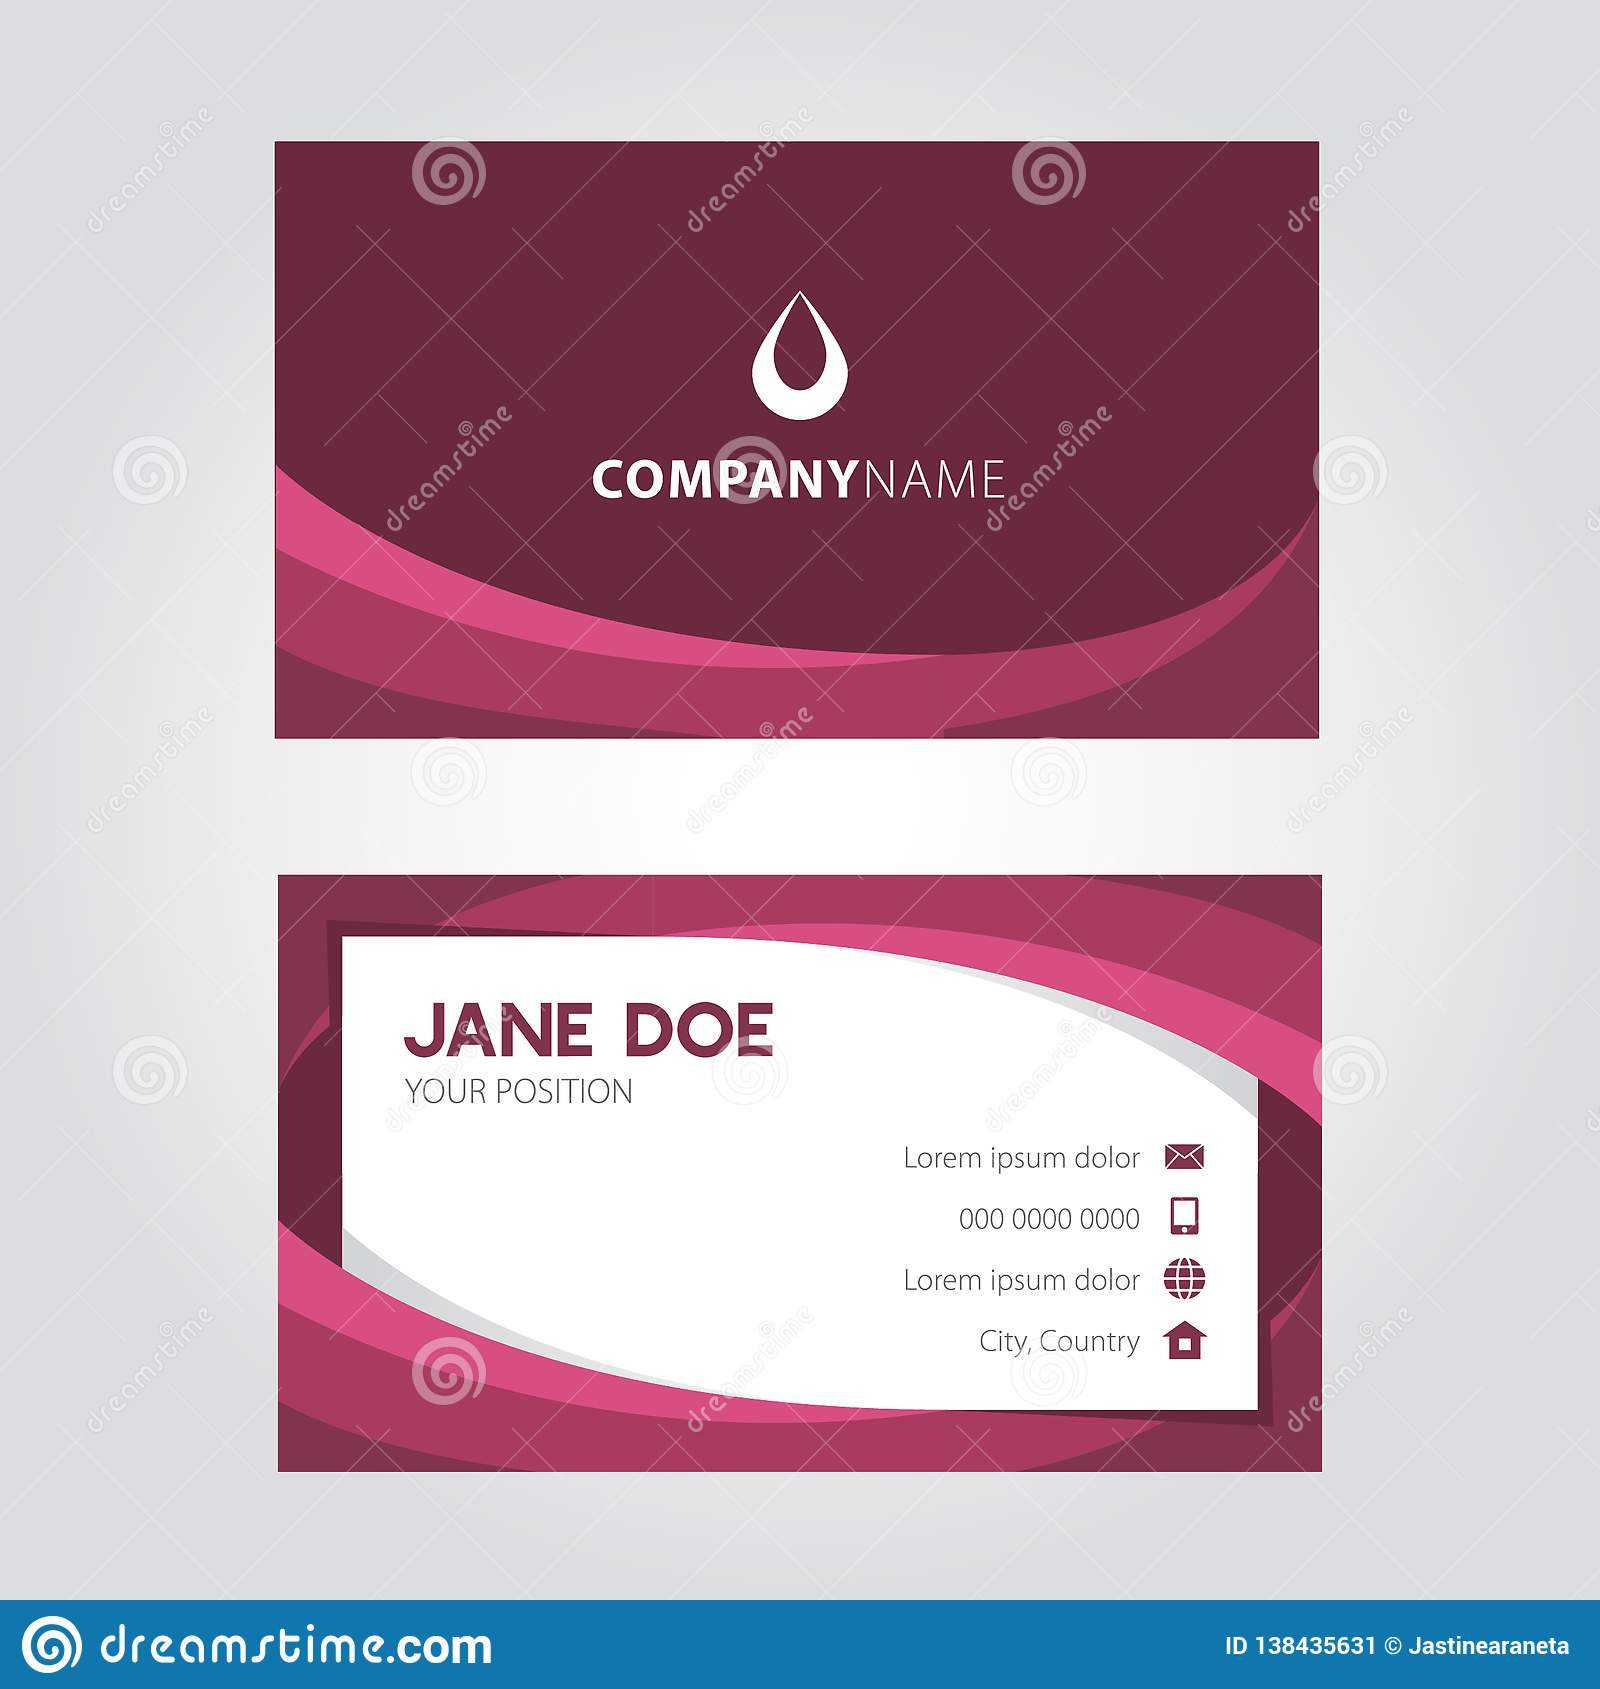 Shades Of Violet Elegant Modern Business Card Design Within Modern Business Card Design Templates